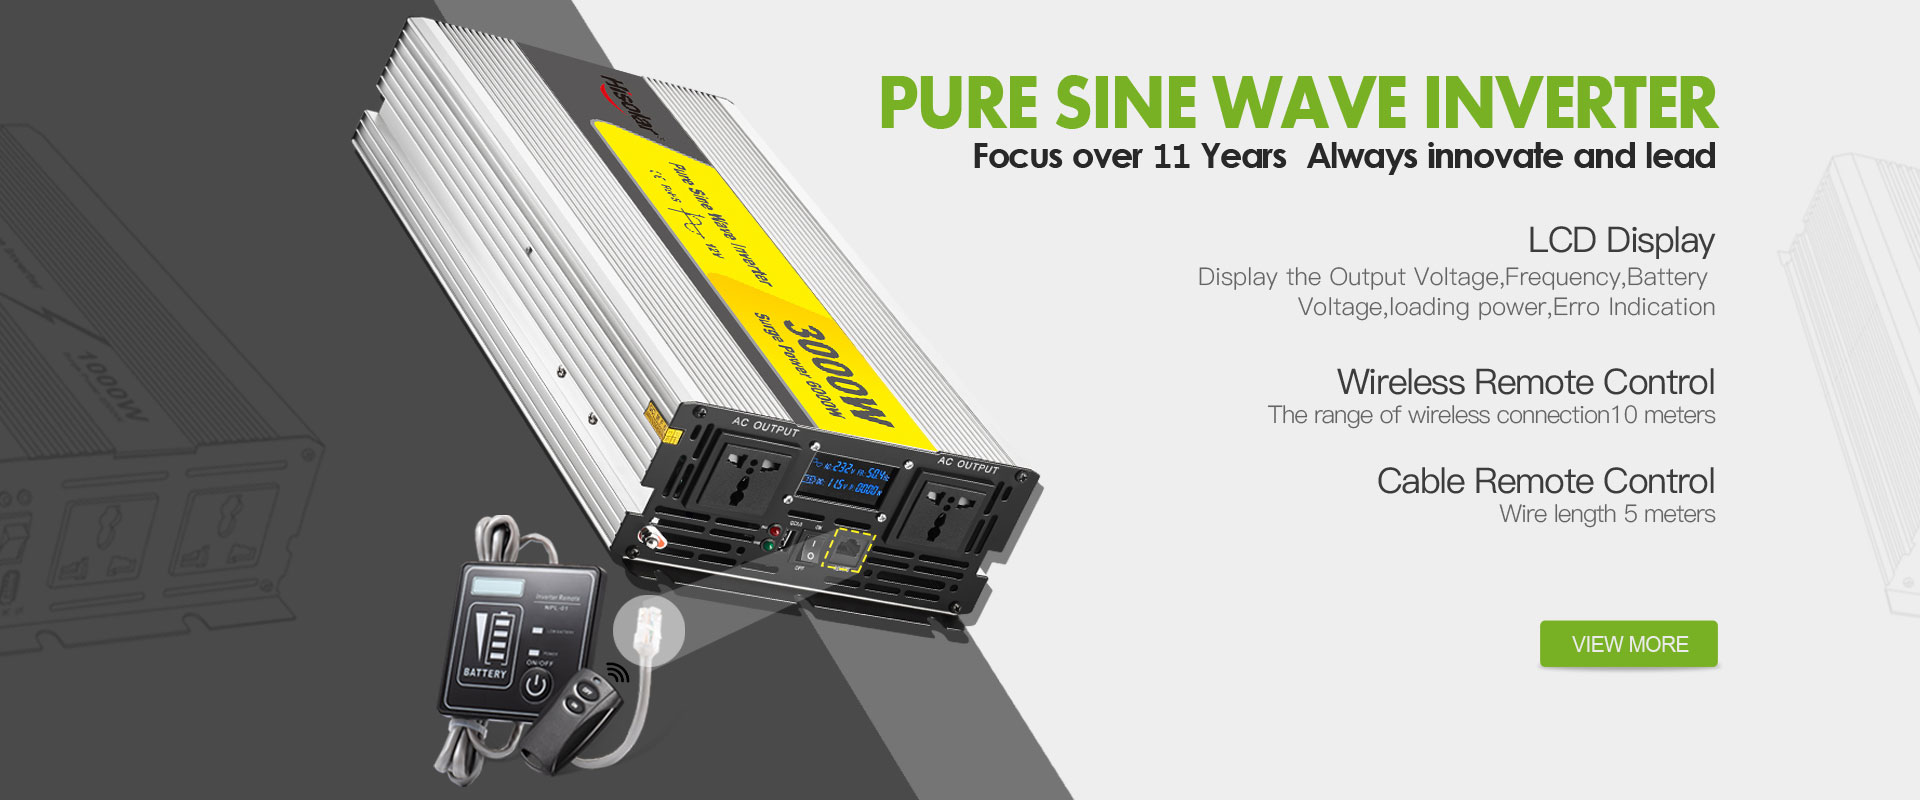 Pabrika ng China Modified Sine Wave Inverter